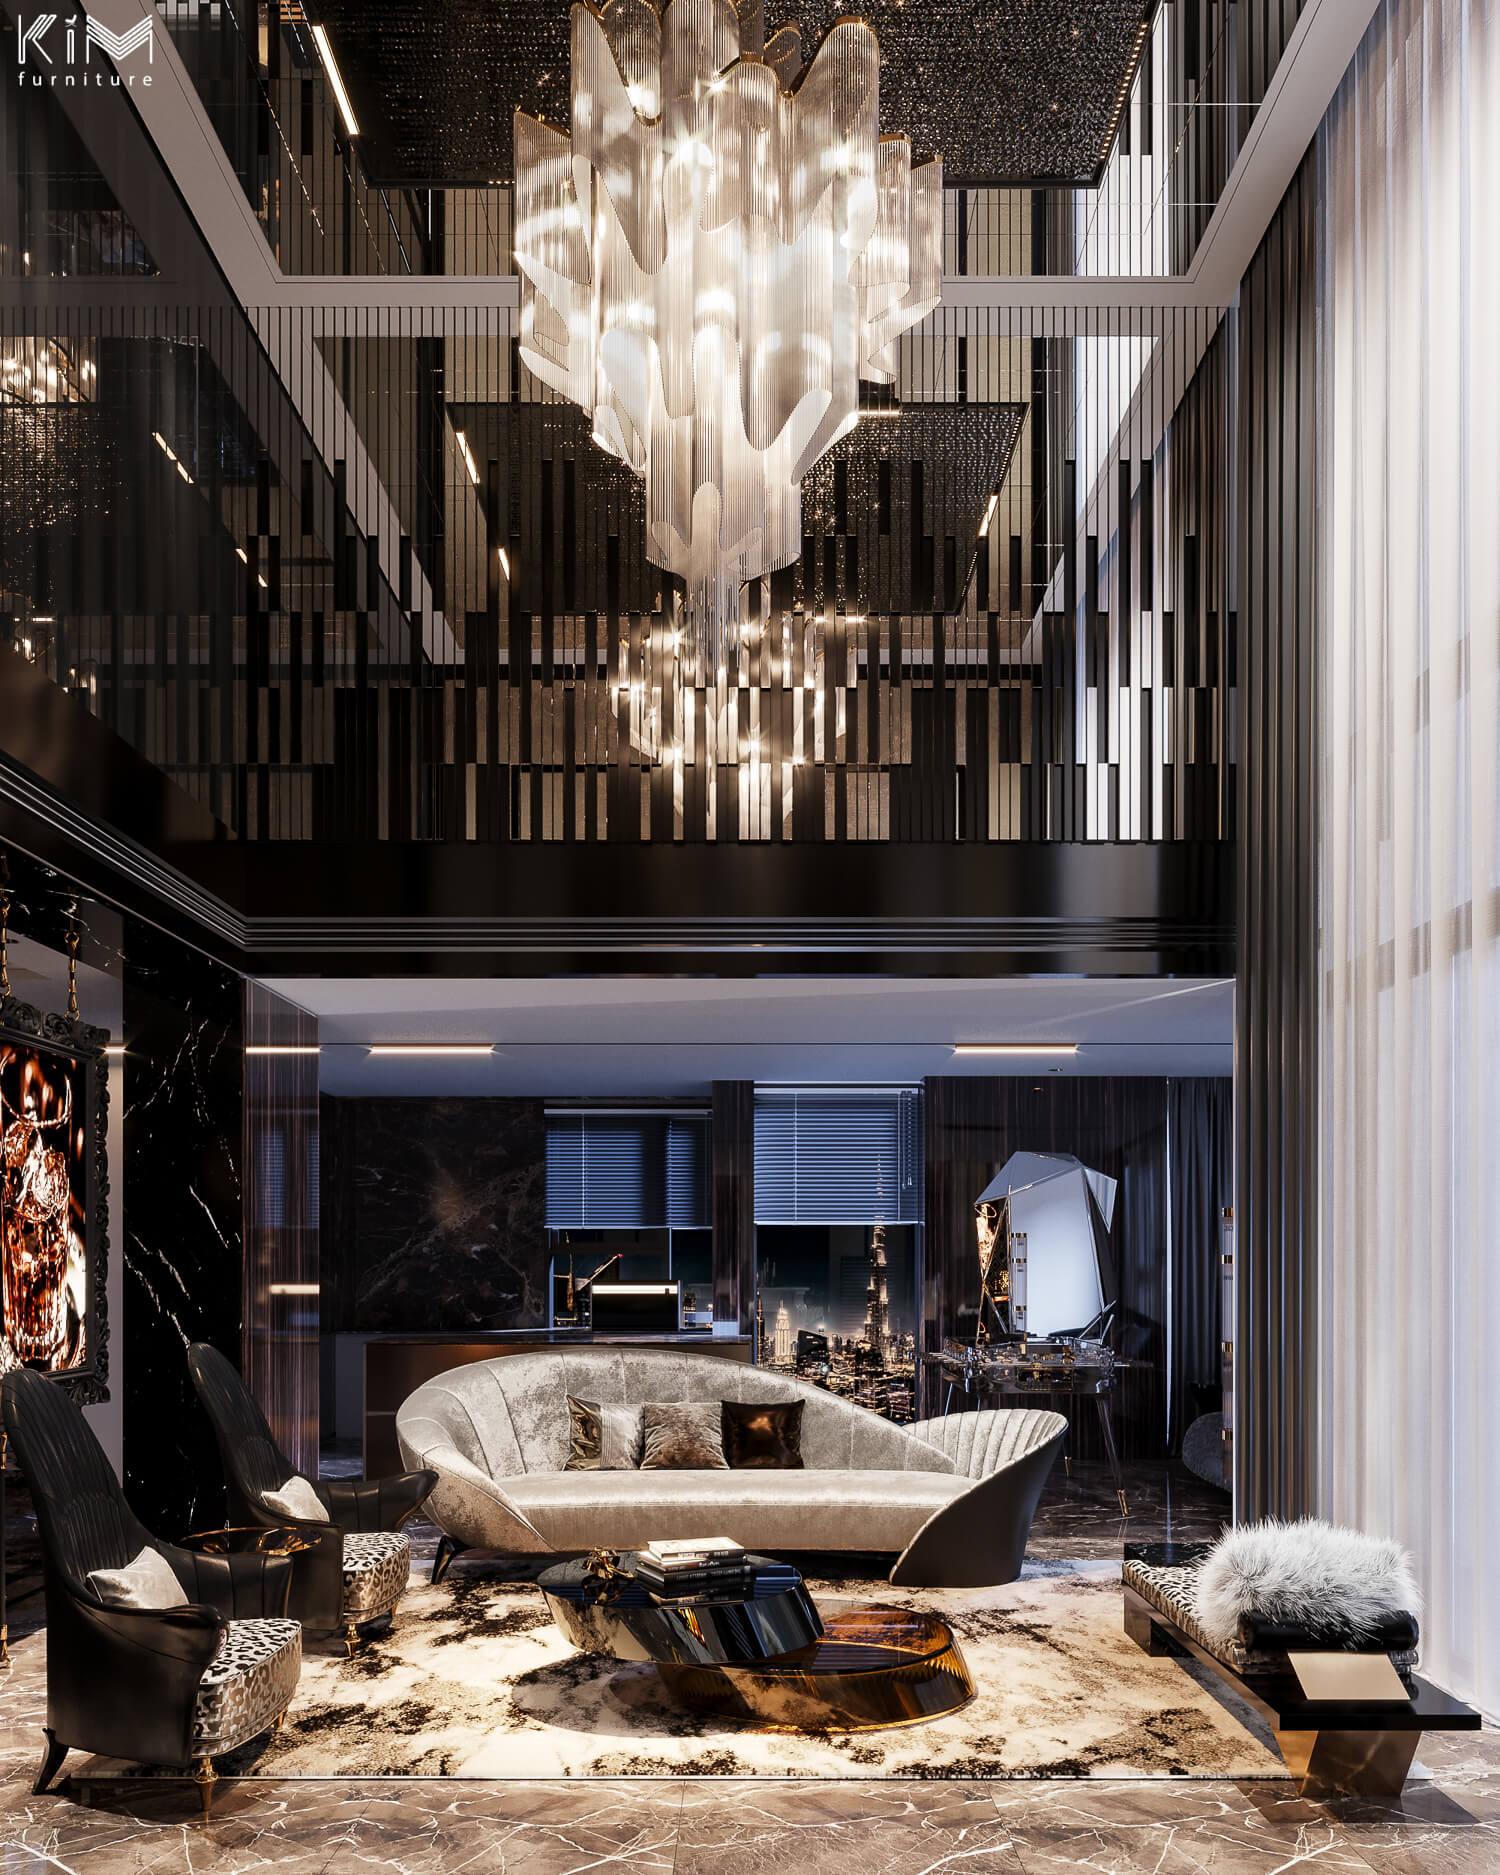 Thiết kế căn hộ Penthouse phong cách Modern Luxury